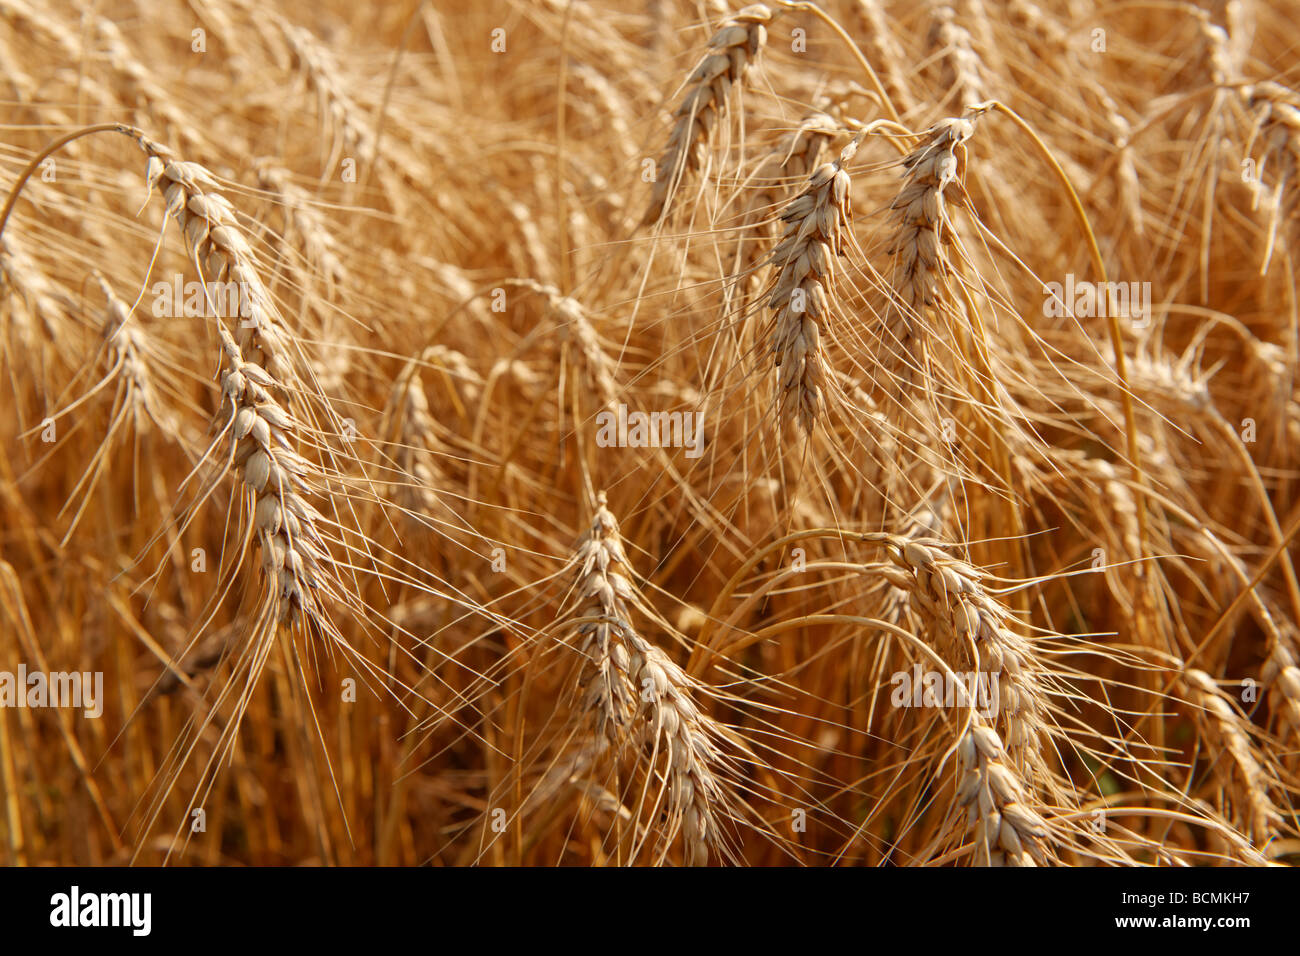 La culture du blé dans un champ Banque D'Images